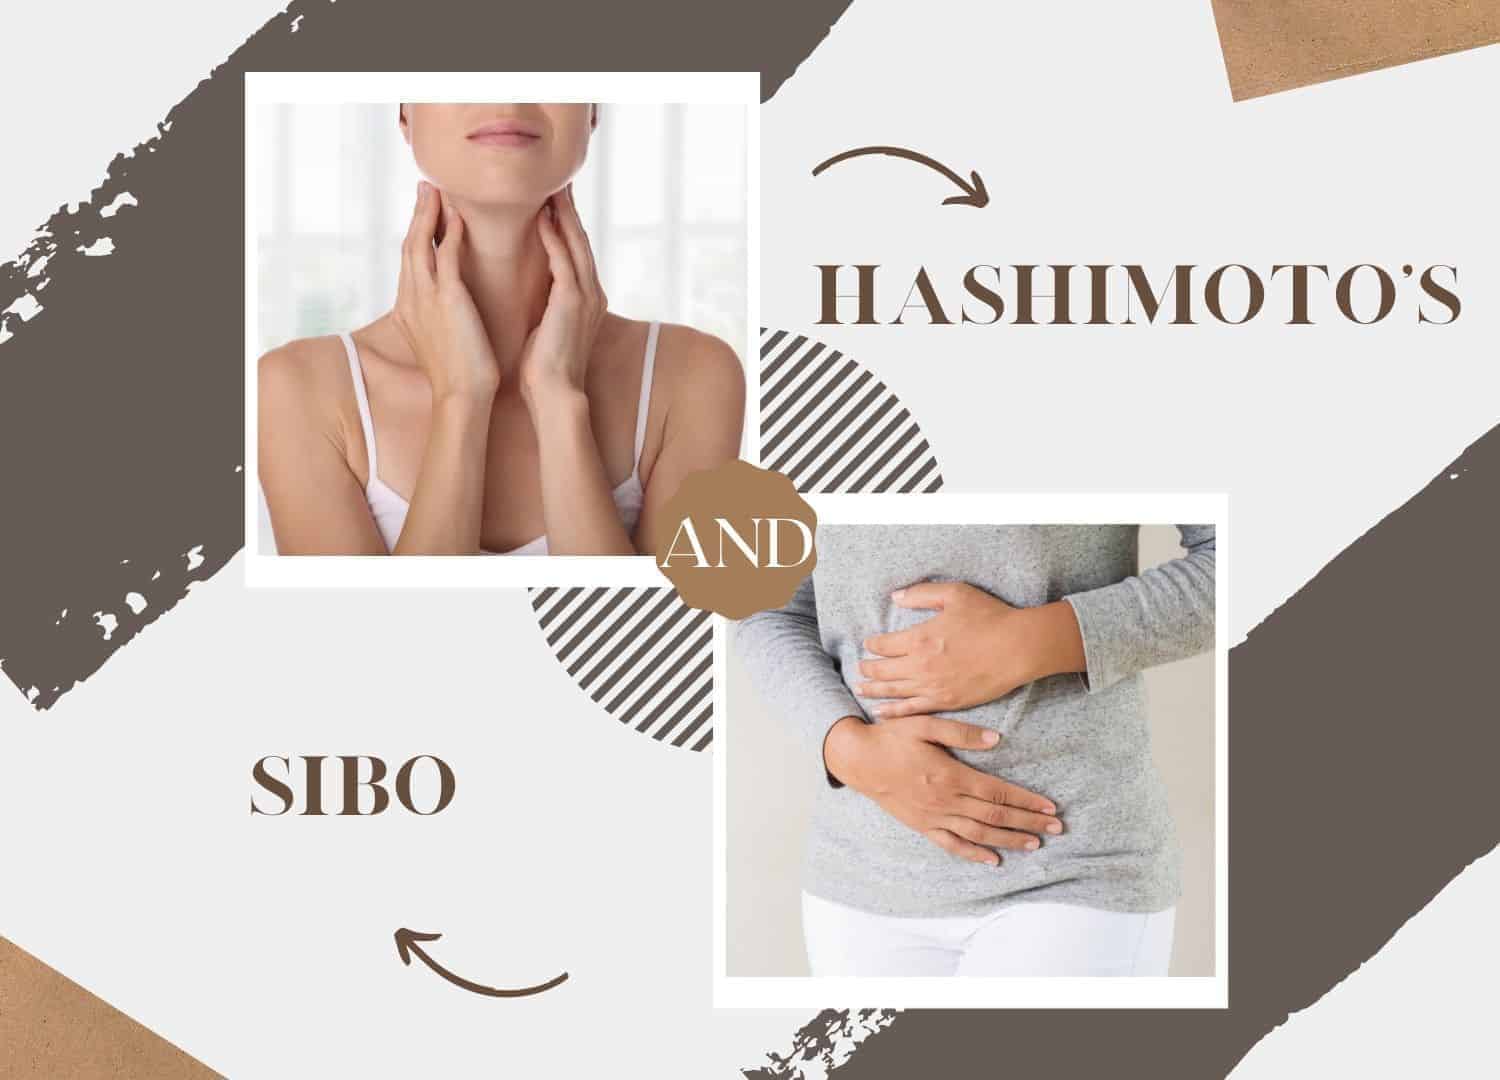 sibo and hashimoto's